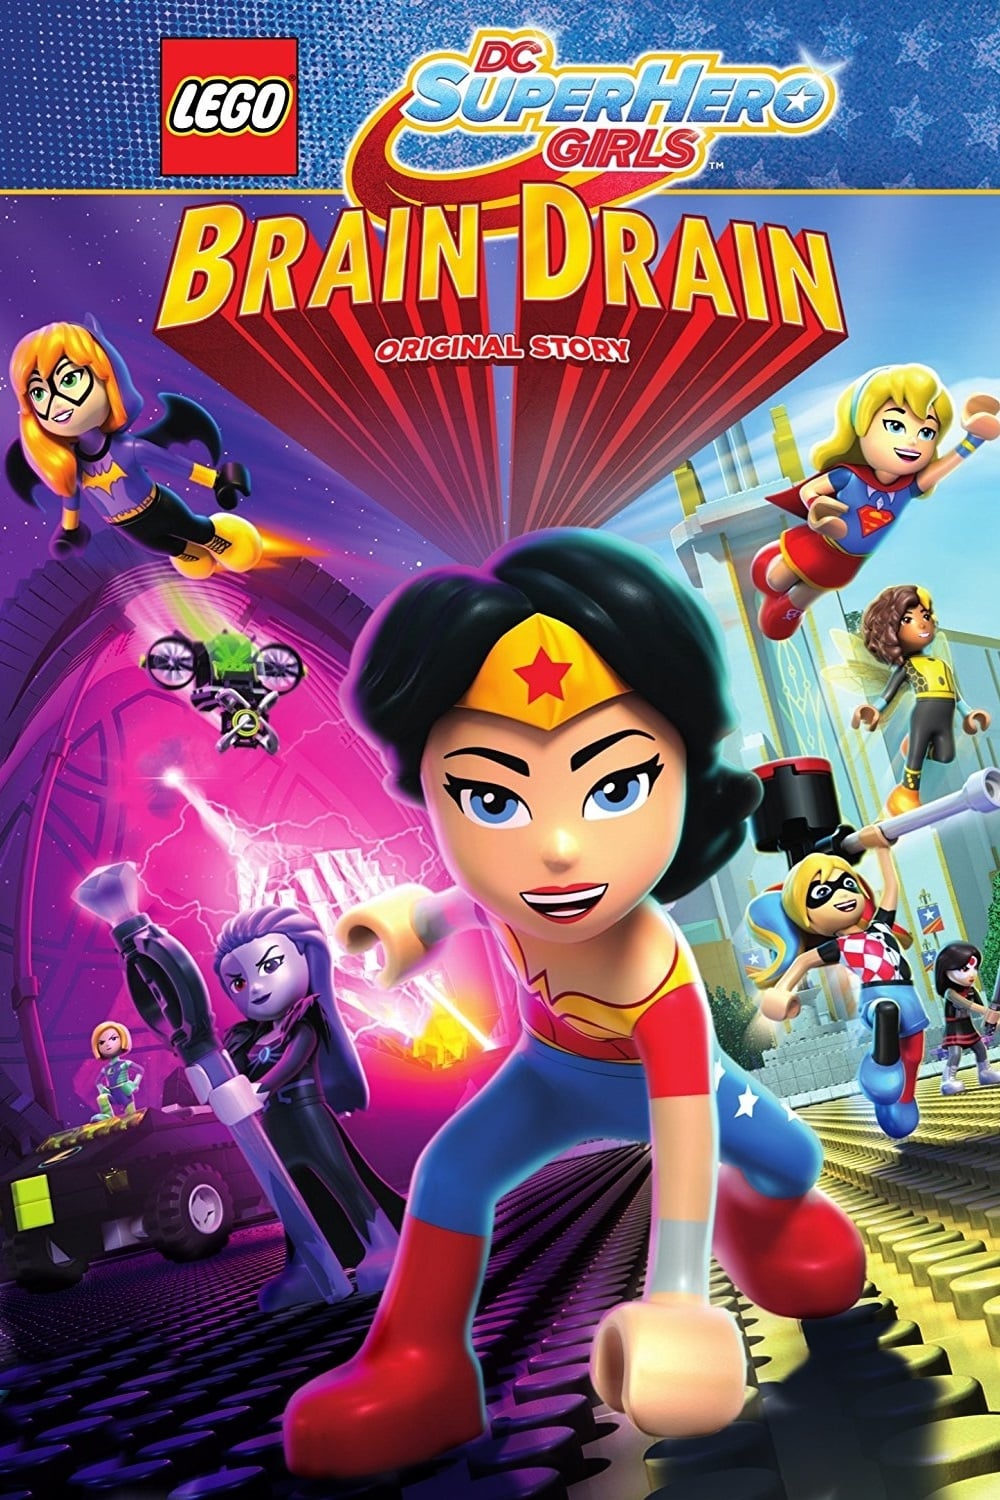 ดูหนังออนไลน์ Lego DC Super Hero Girls Brain Drain (2017) เลโก้ แก๊งค์สาว ดีซีซูเปอร์ฮีโร่